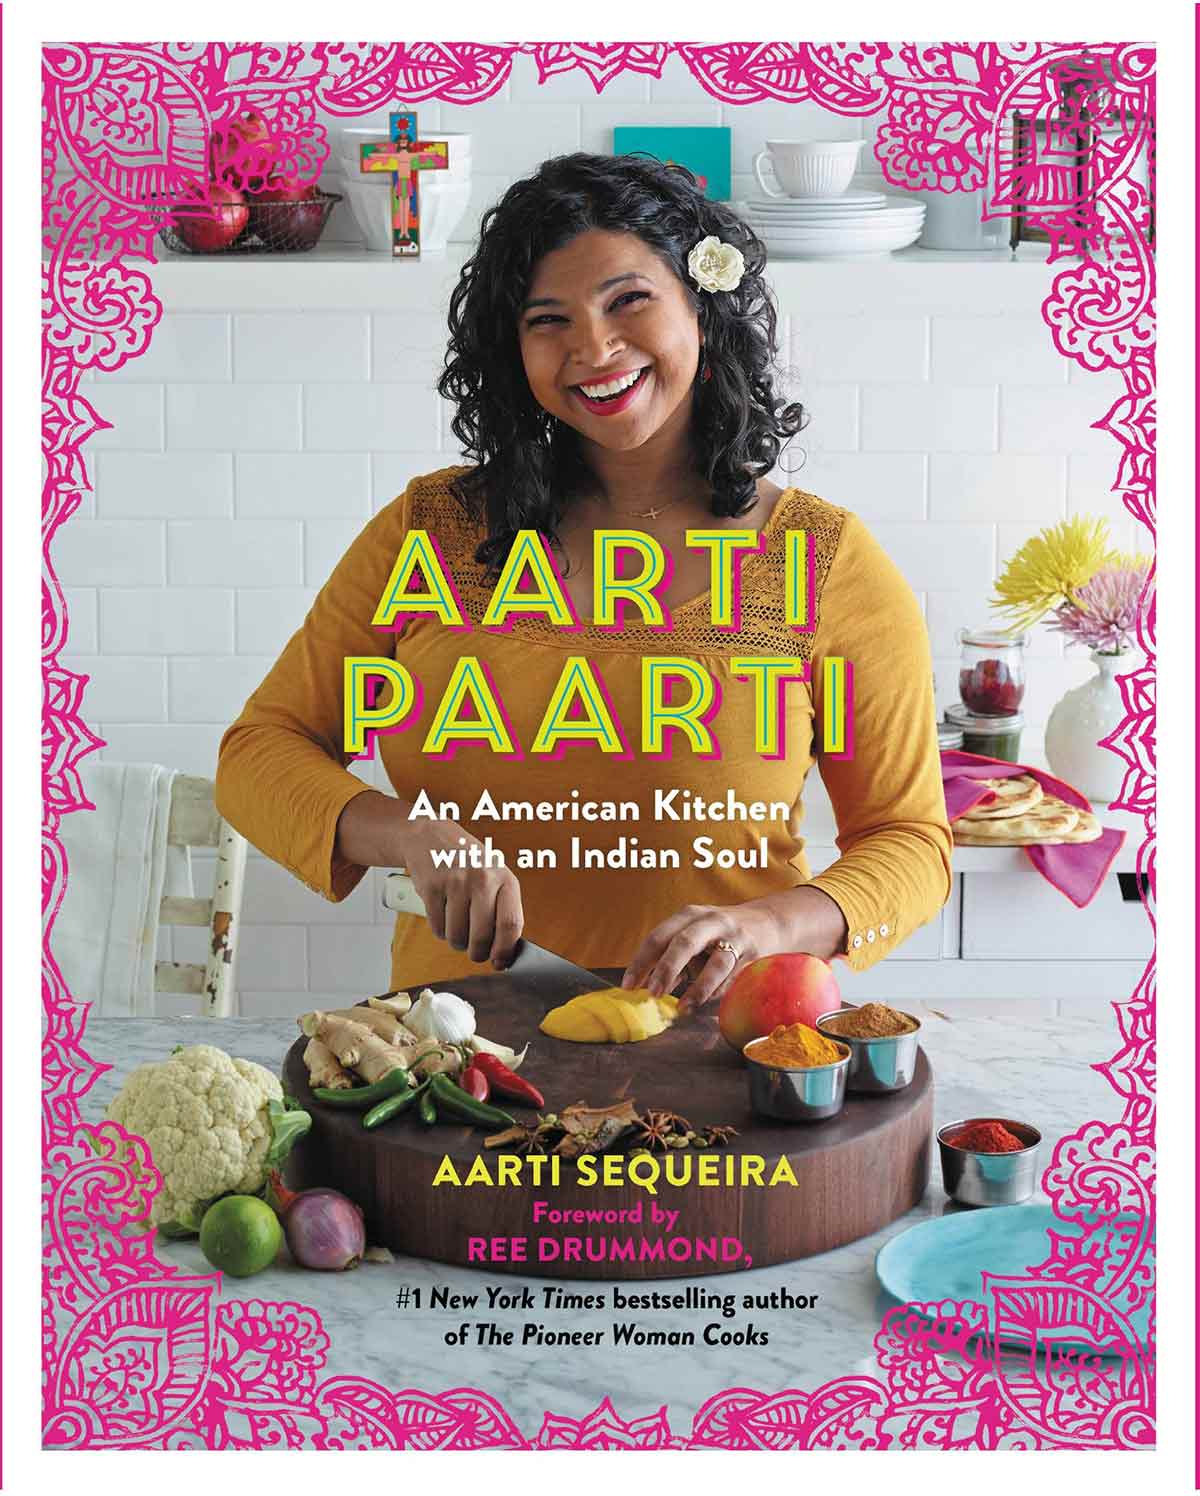 Aarti Sequeira's book, "Aarti Paarti."